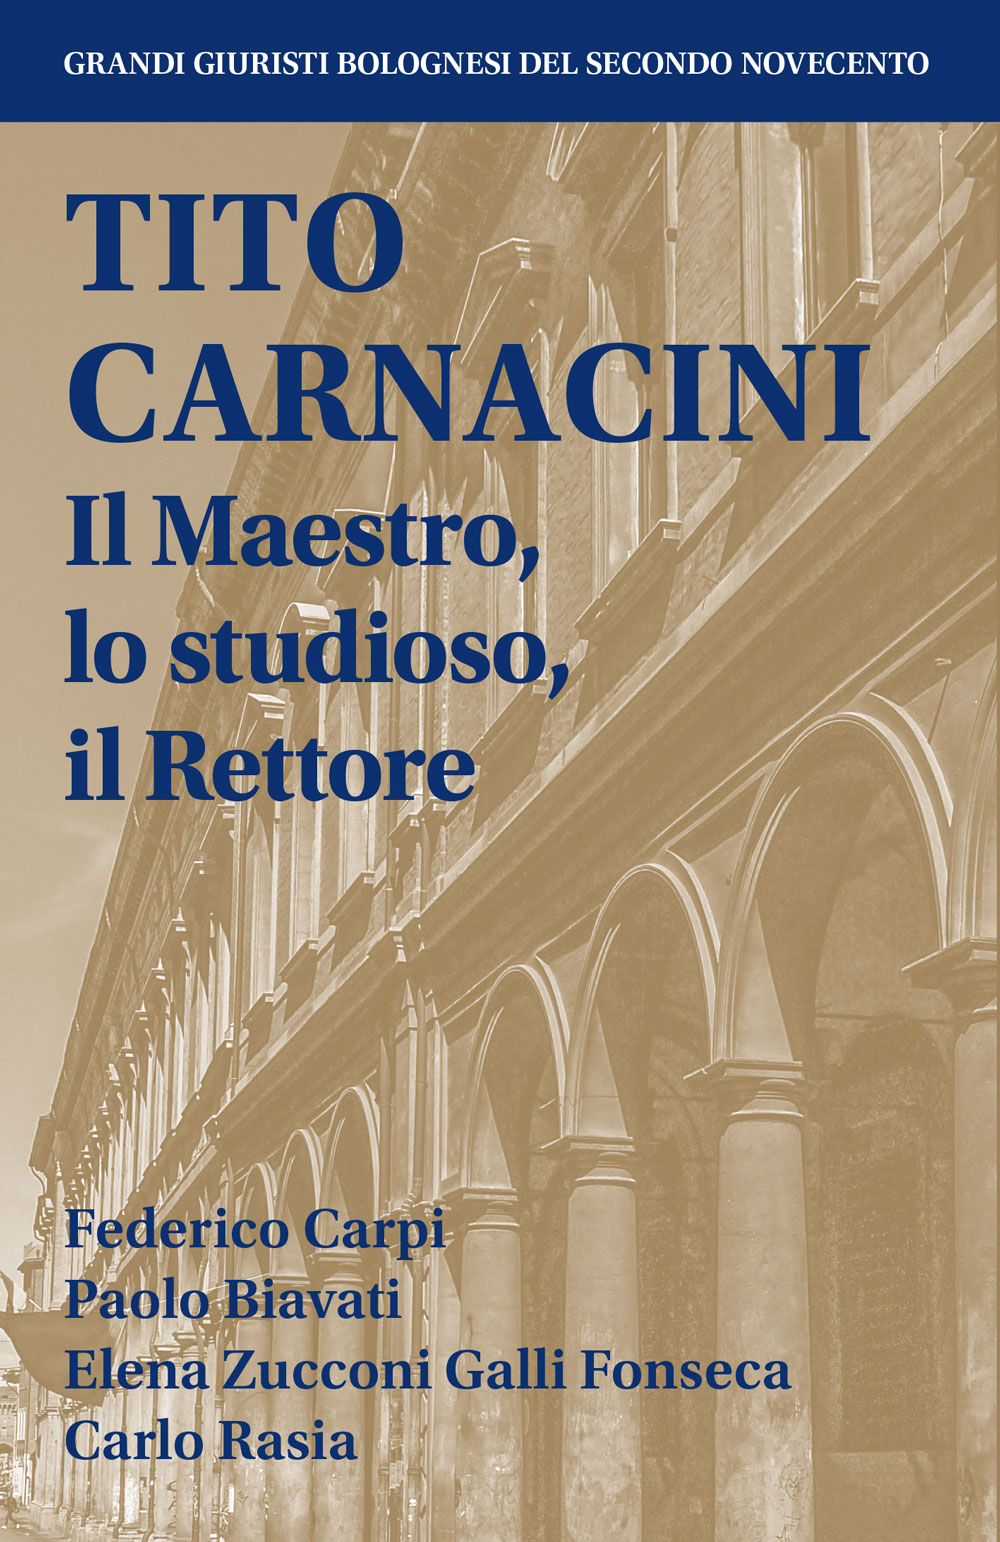 Tito Carnacini - Bologna University Press